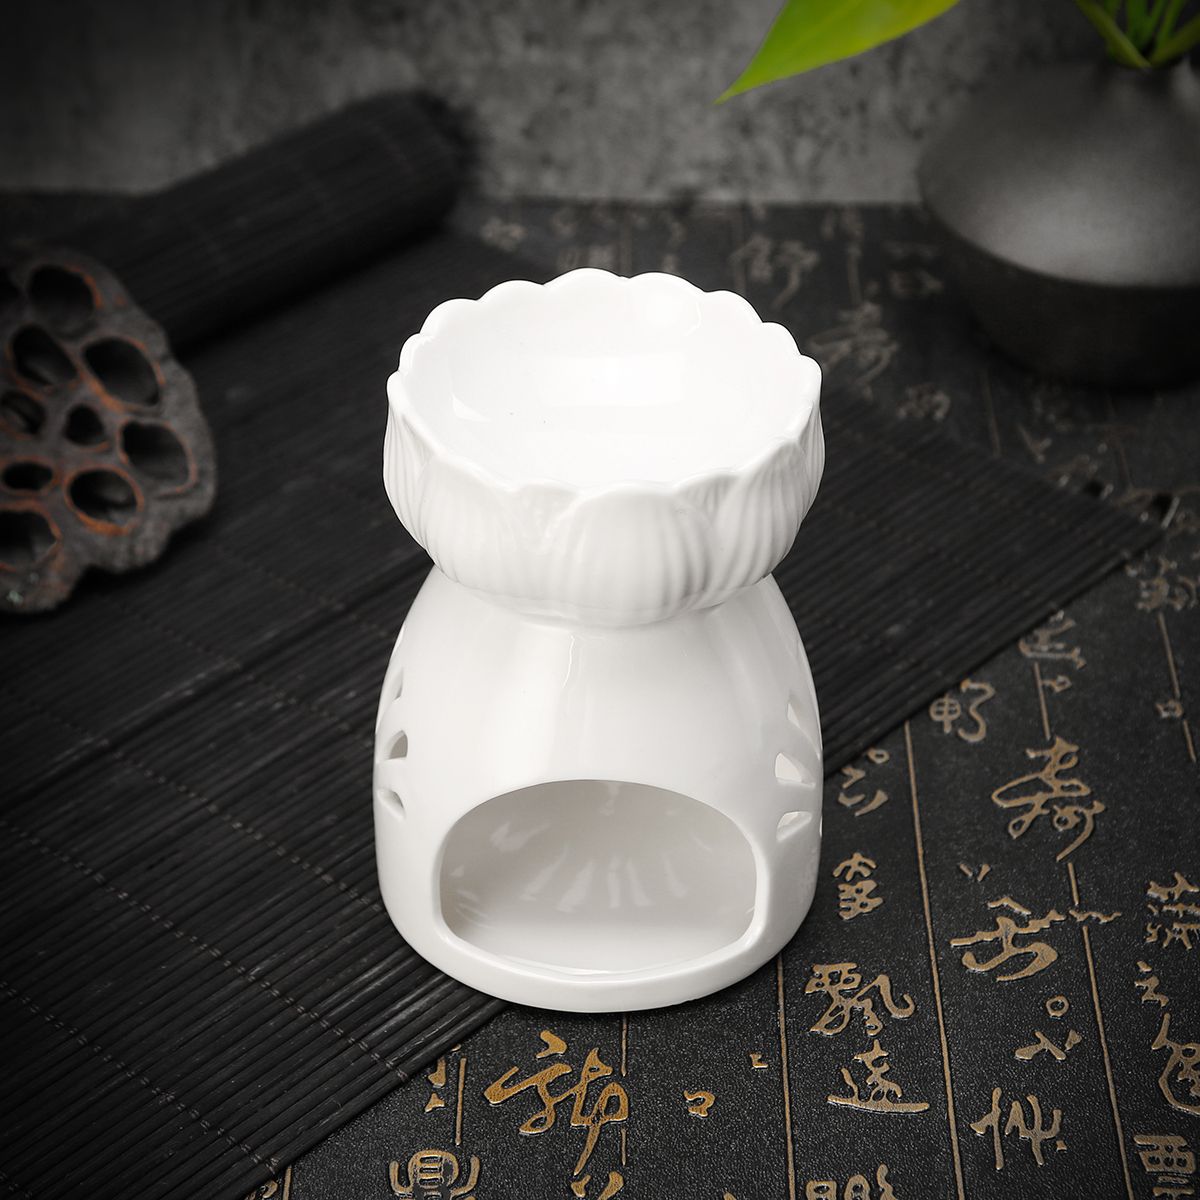 Lotus-Flower-Ceramic-Oil-Incense-Burner-Tea-Light-Holder-Home-Fragrance-White-1527638